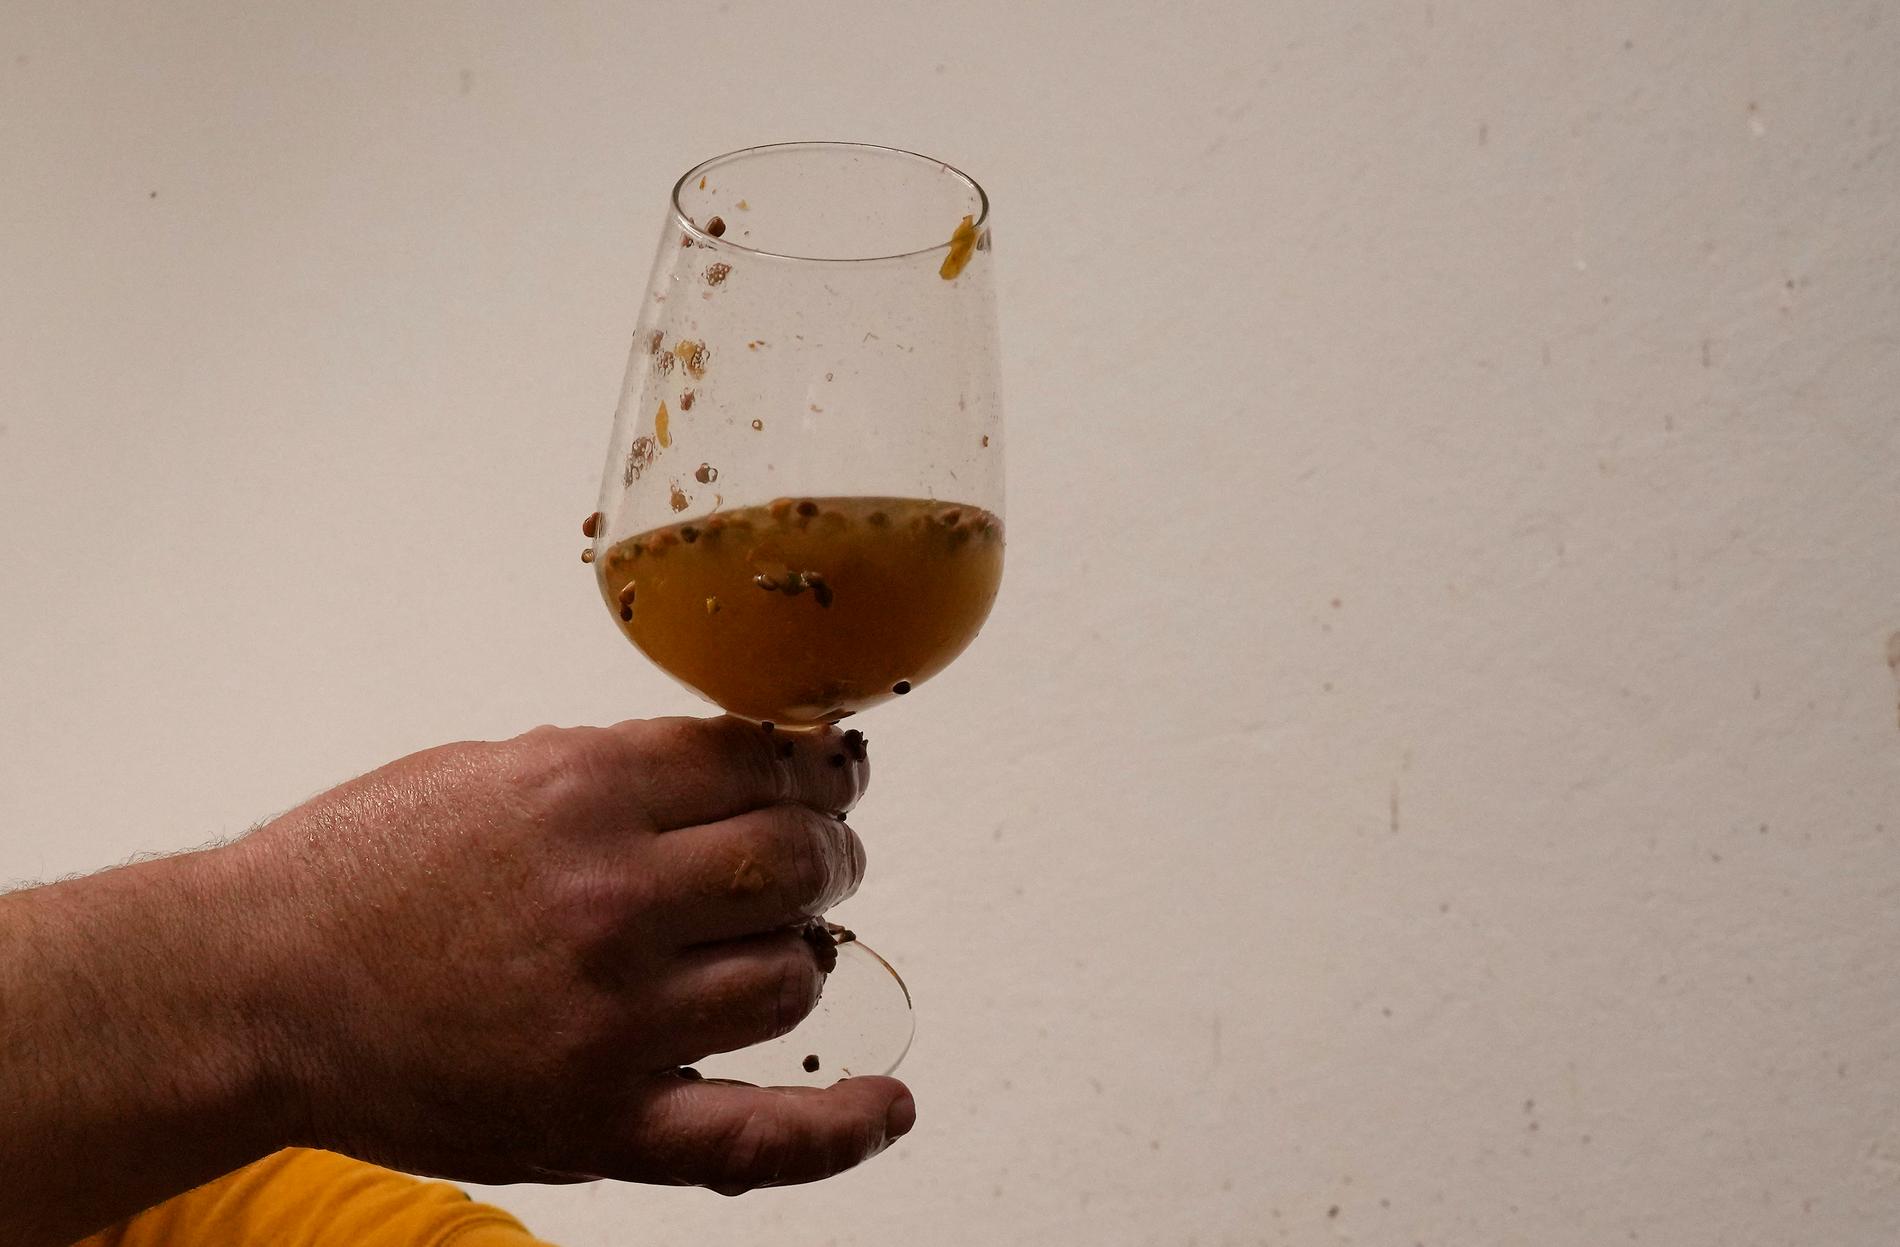 Vinmakaren Milos Skabar i nordöstra Italien är inblandad i en bubblande strid om vad det lokala vinet ska få heta.